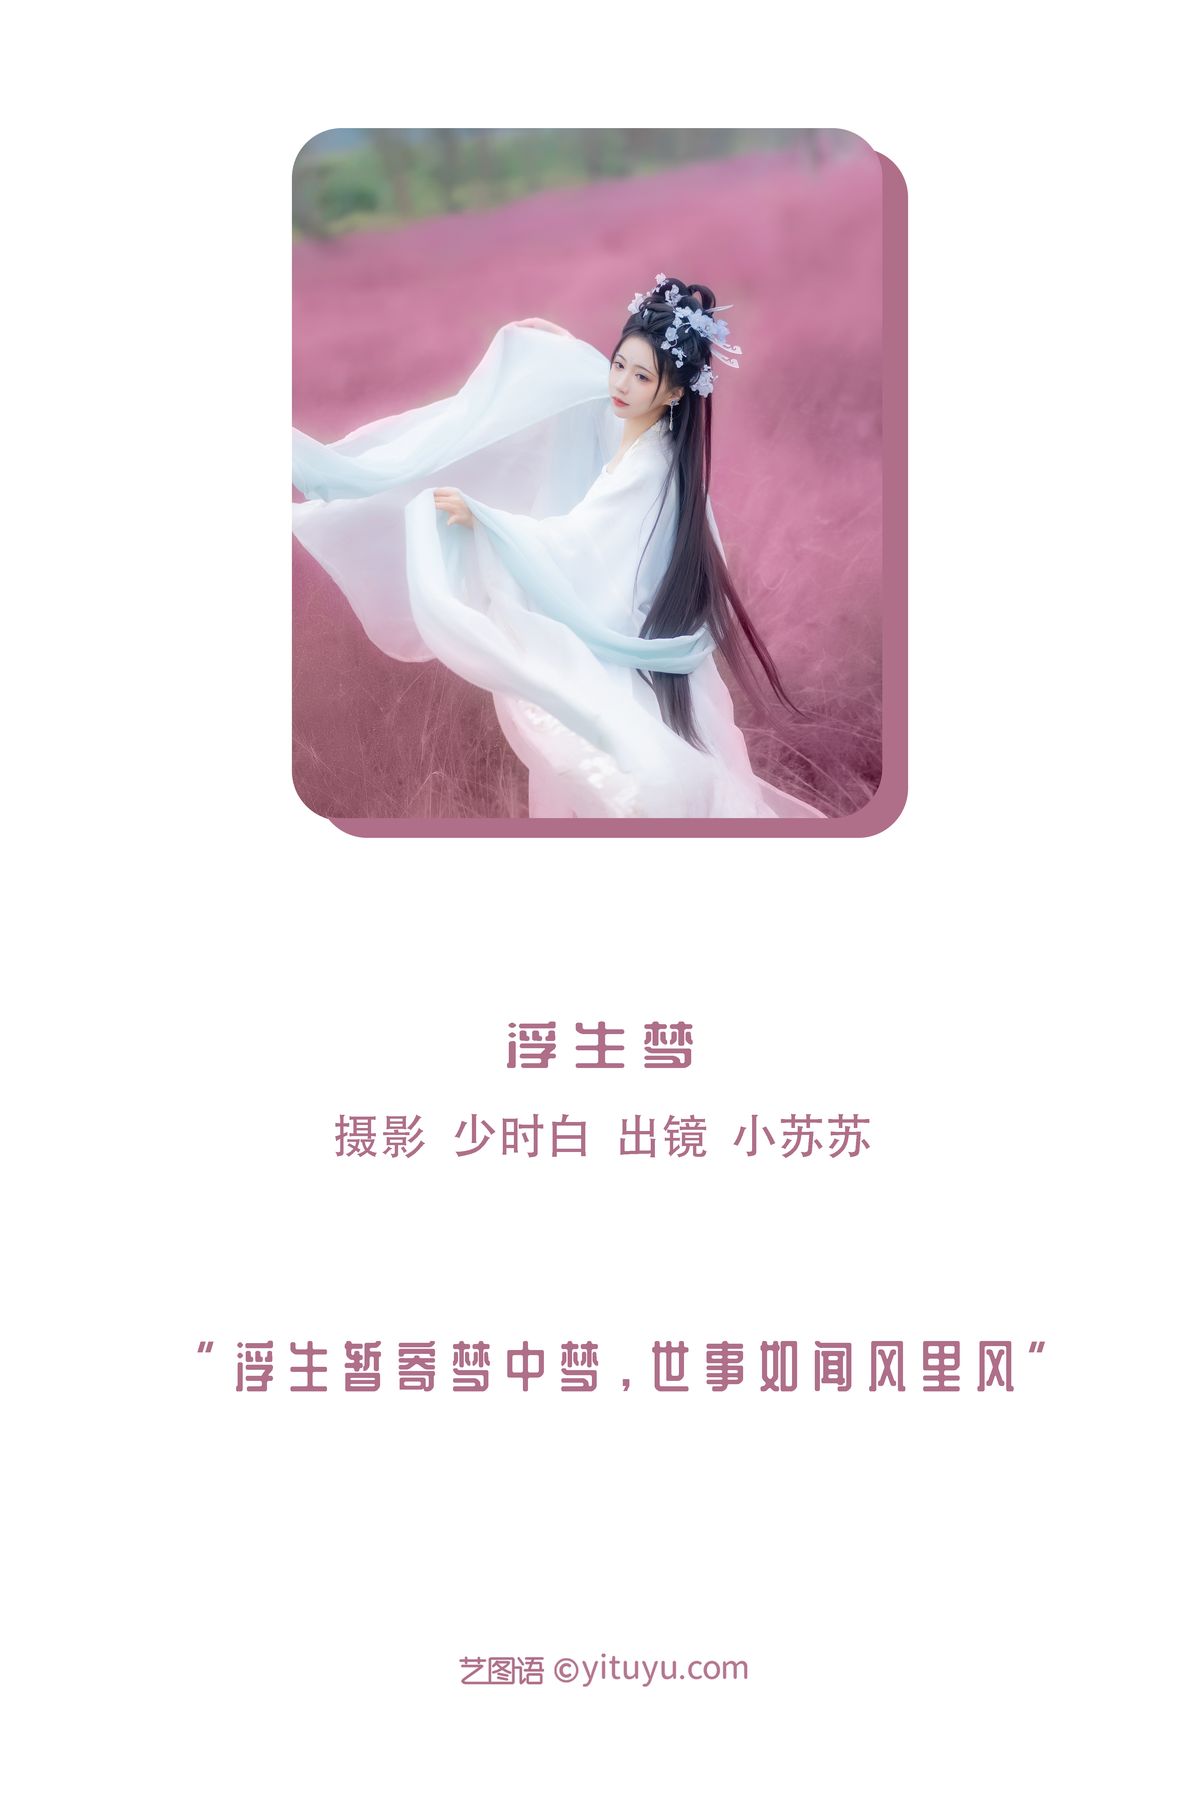 YiTuYu艺图语 Vol 3038 Qi Luo Sheng De Xiao Su Su 0001 5496367496.jpg